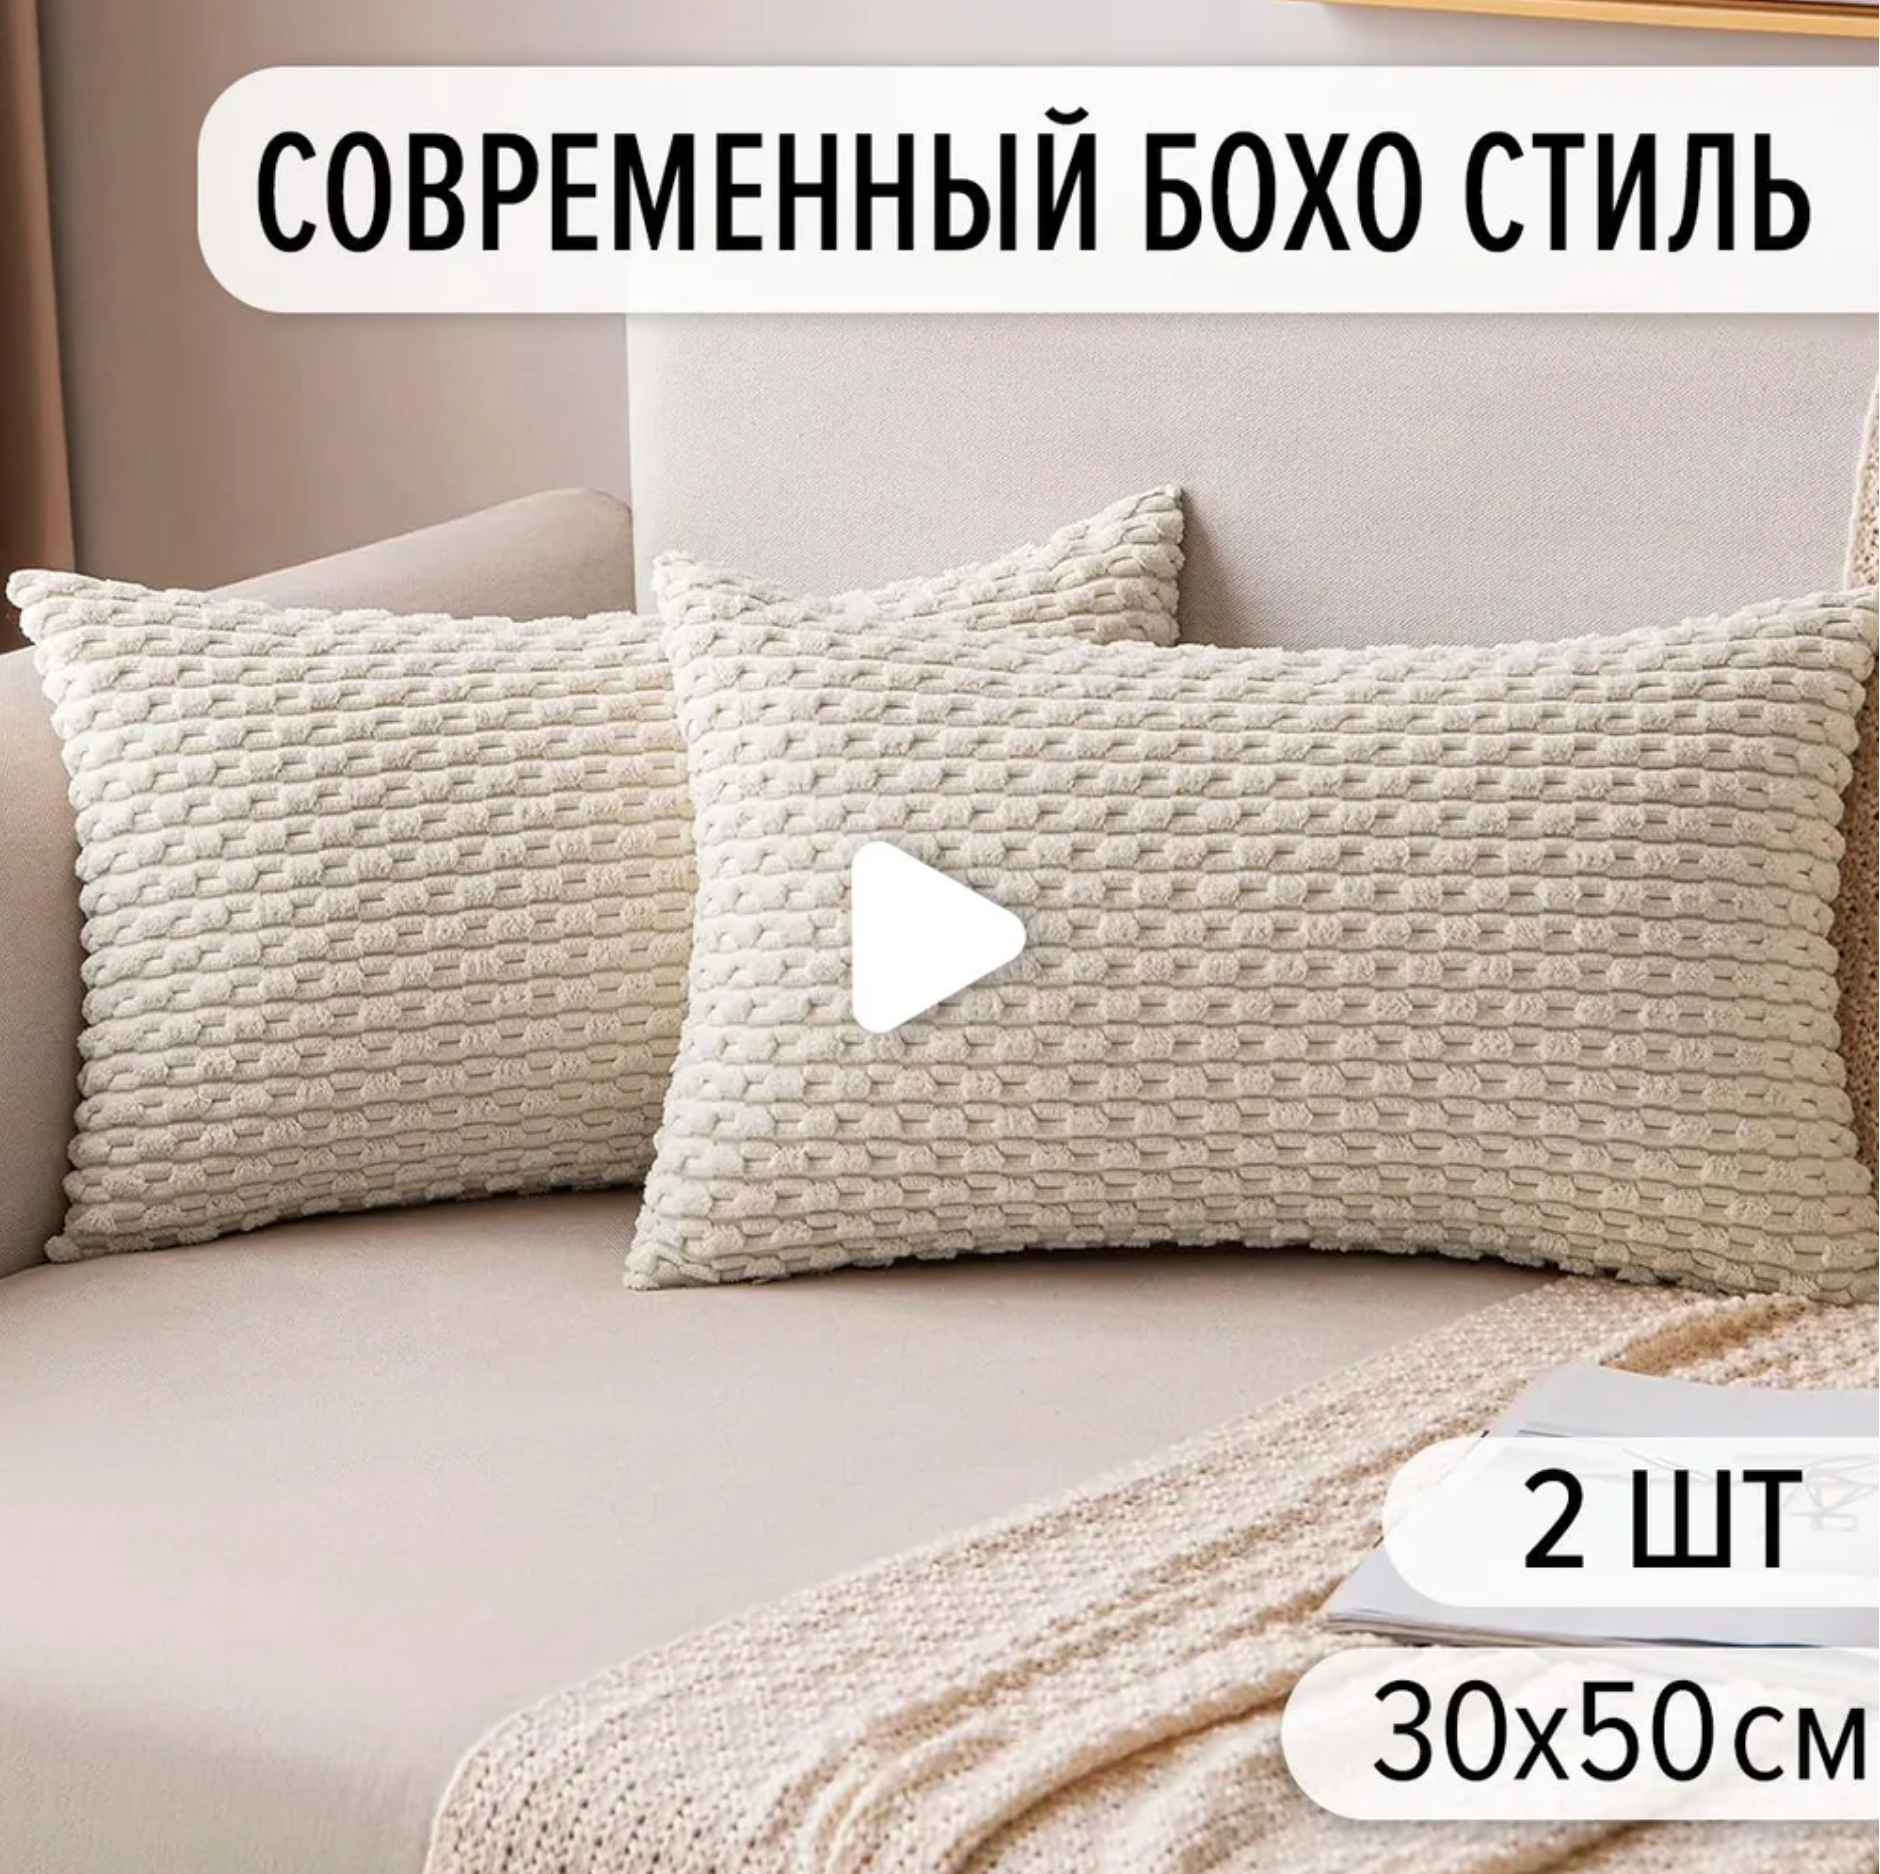 Наволочки декоративные на подушки 30x50 (2 шт) из плюша, в бежевом цвете, современный стиль для дивана, кровати и декора